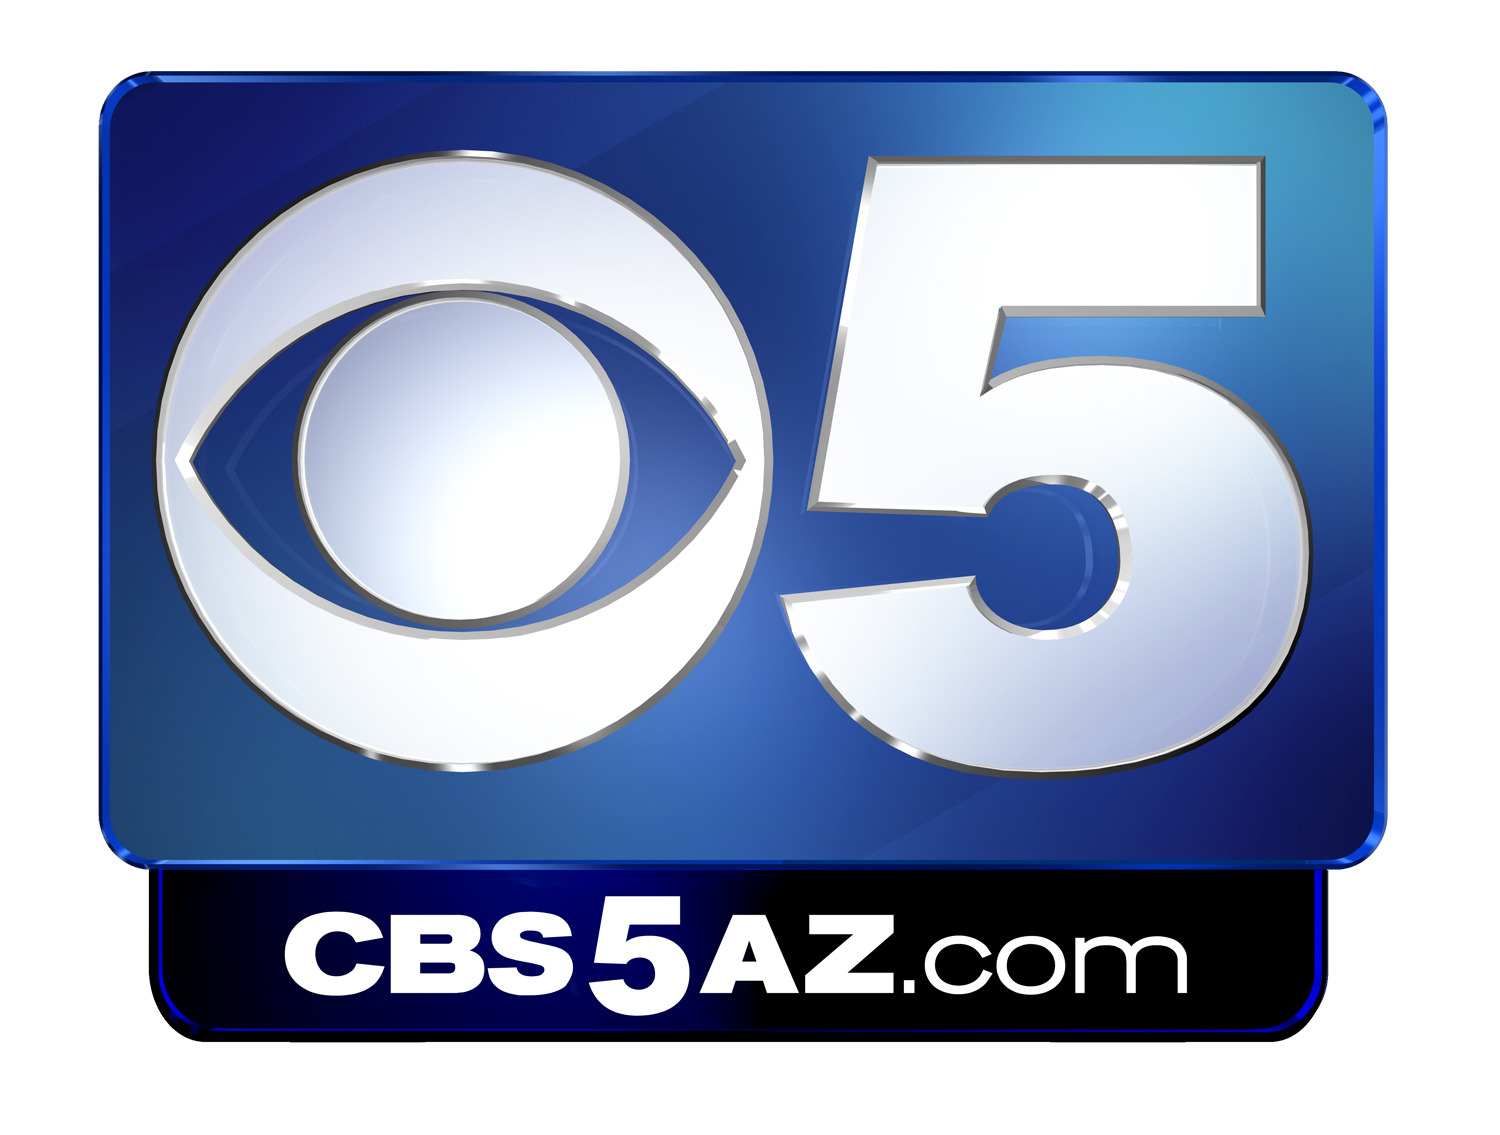 CBS-5-logo-CBS5az-dot-com-COLOR.jpg